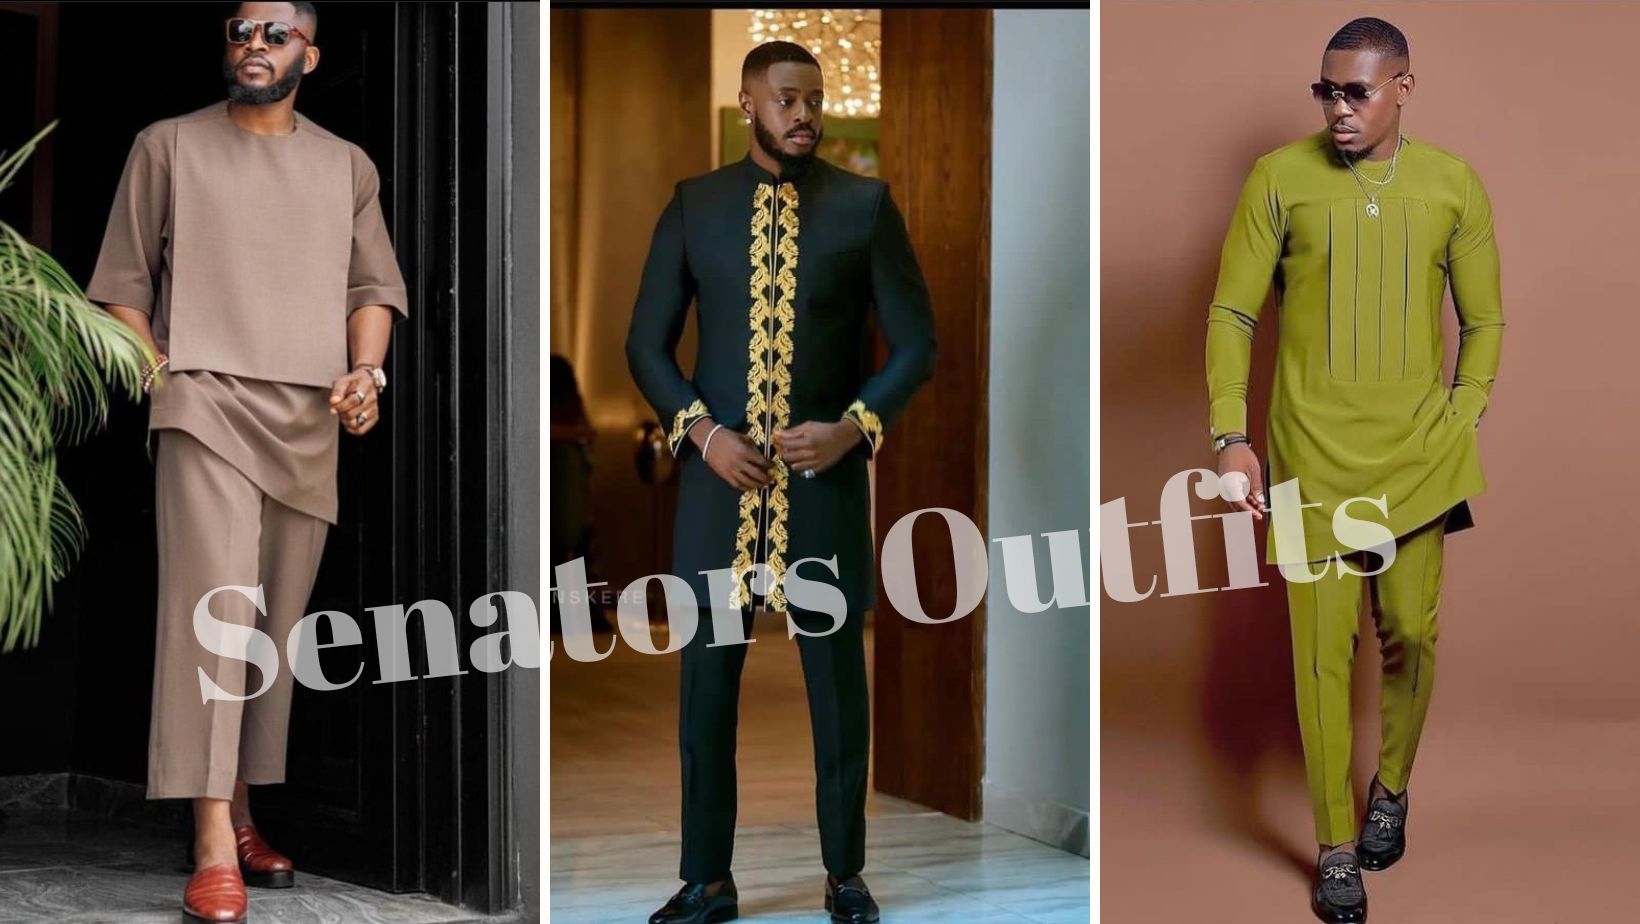 Senators Outfit